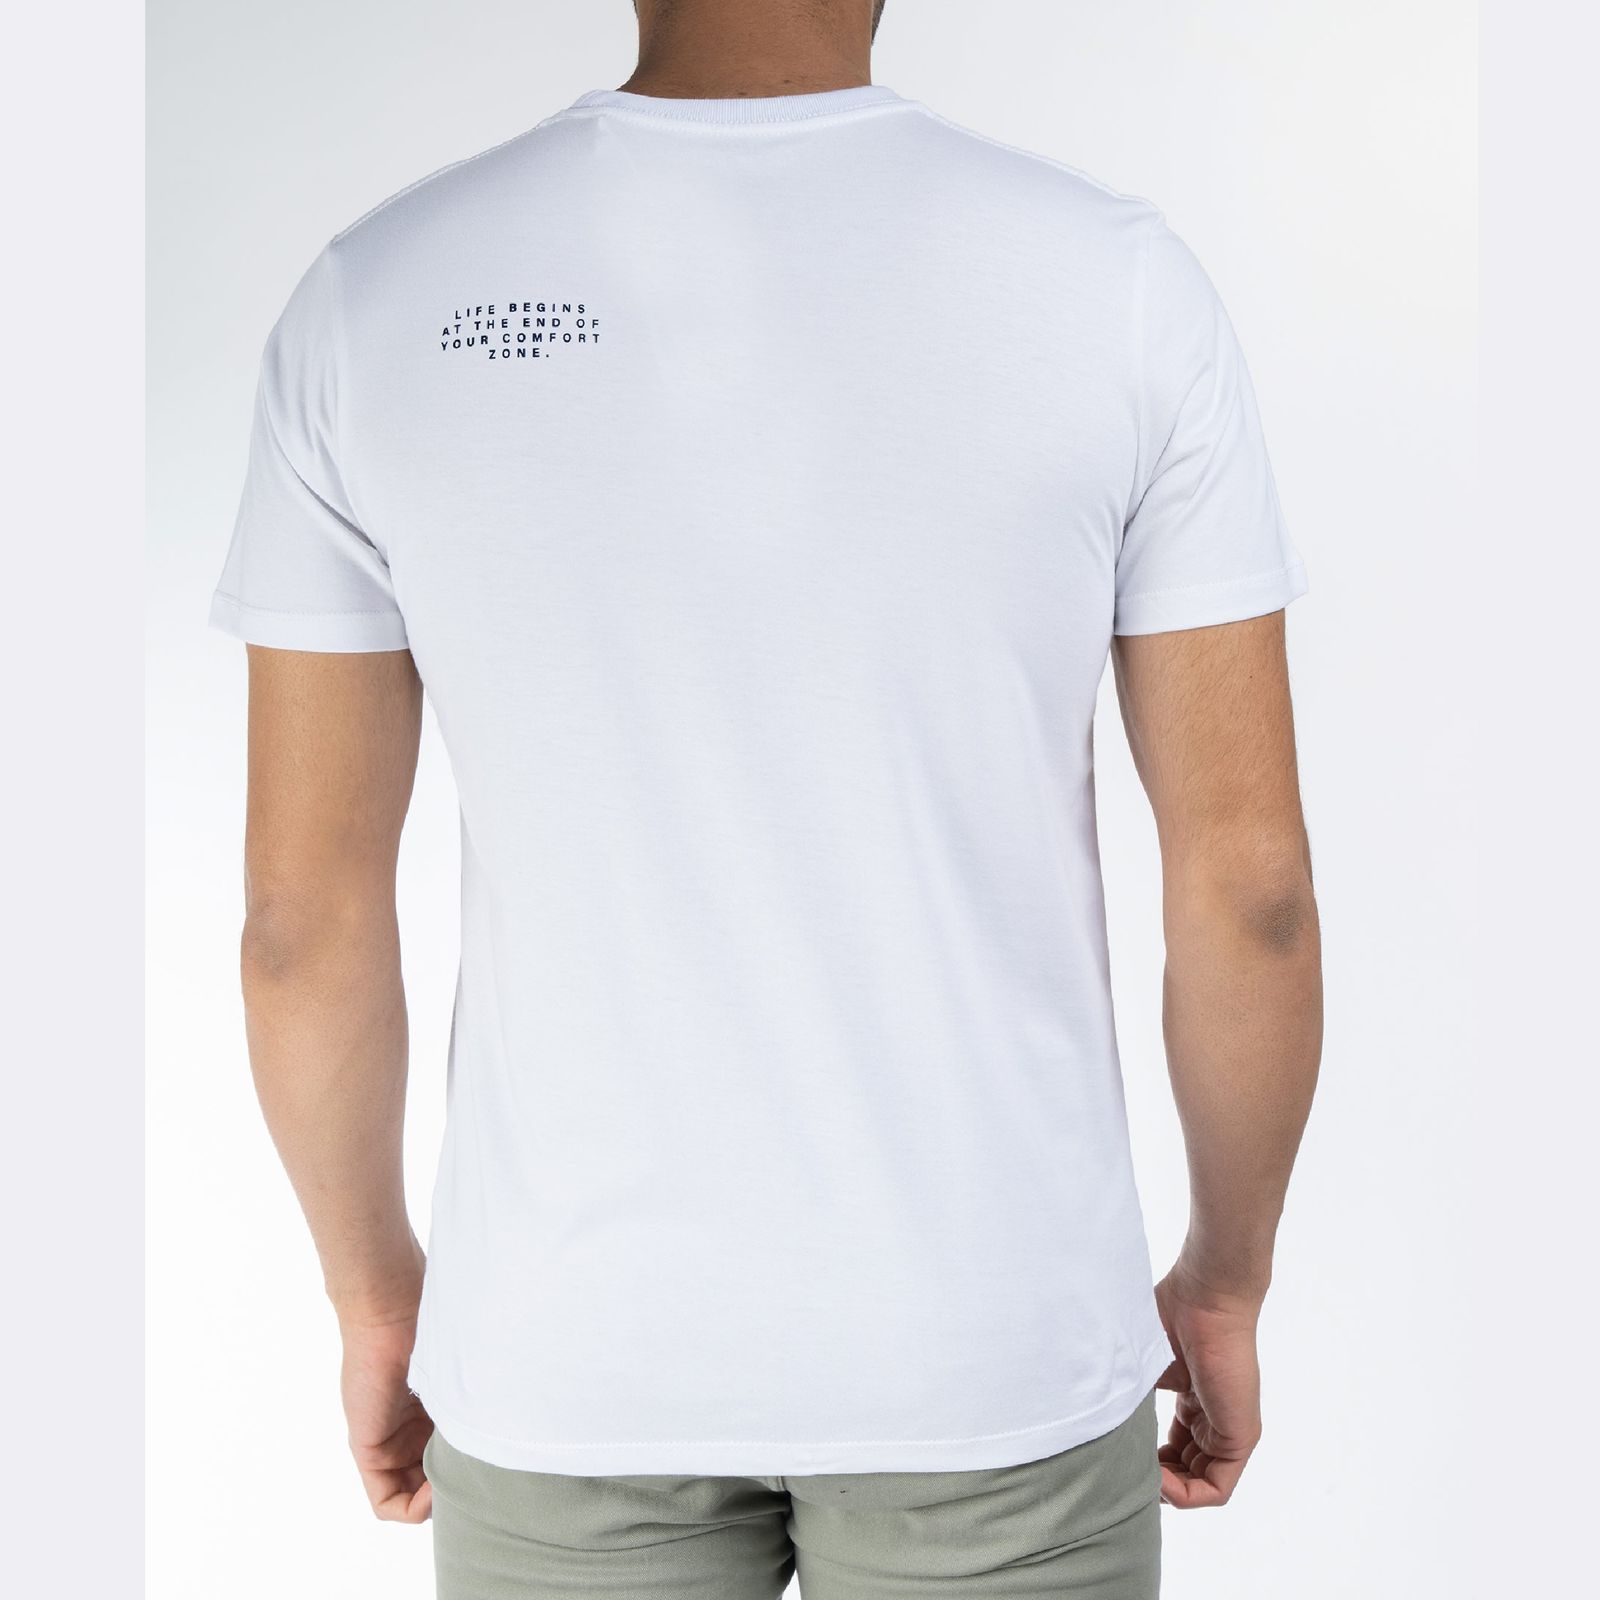 تی شرت آستین کوتاه مردانه جوتی جینز مدل Zone کد 1551350 رنگ سفید -  - 2